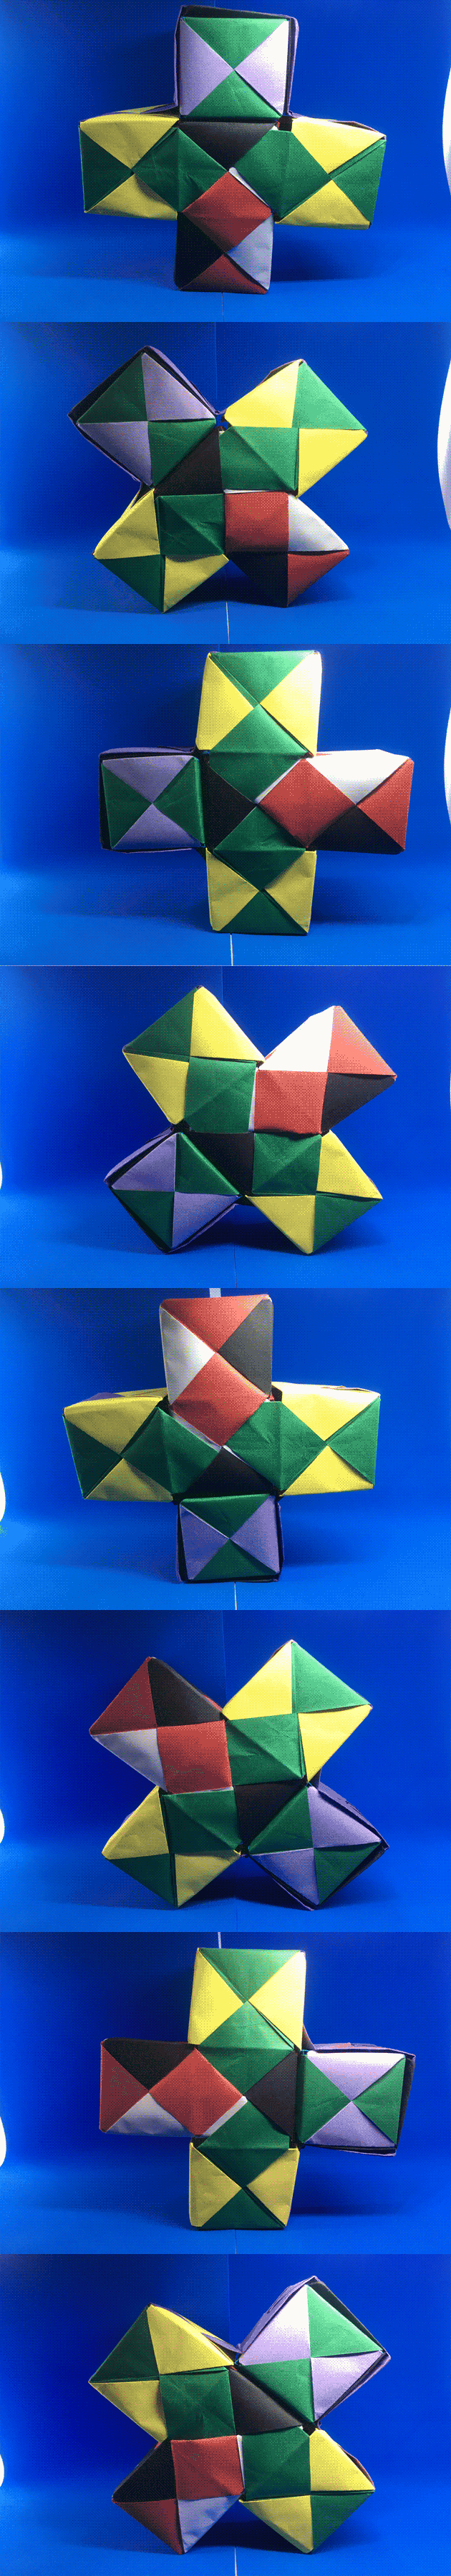 Dizzy Origami